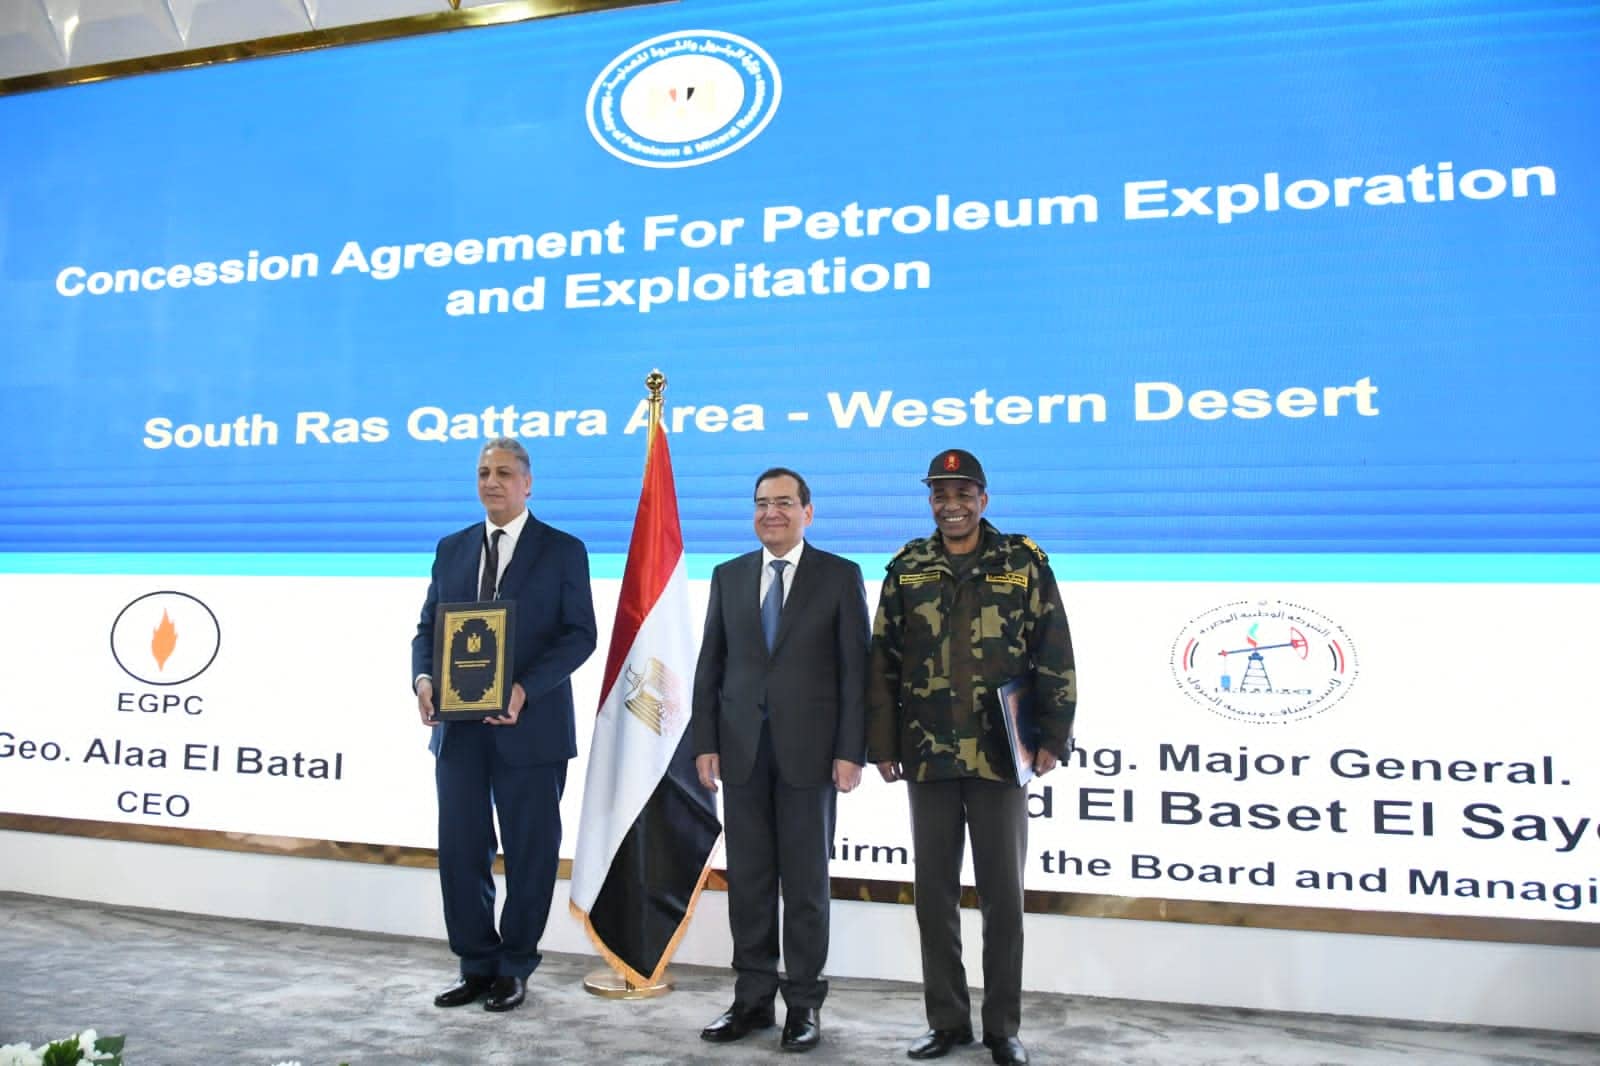  5 اتفاقيات مع شركات وطنية وعالمية للبحث عن البترول والغاز